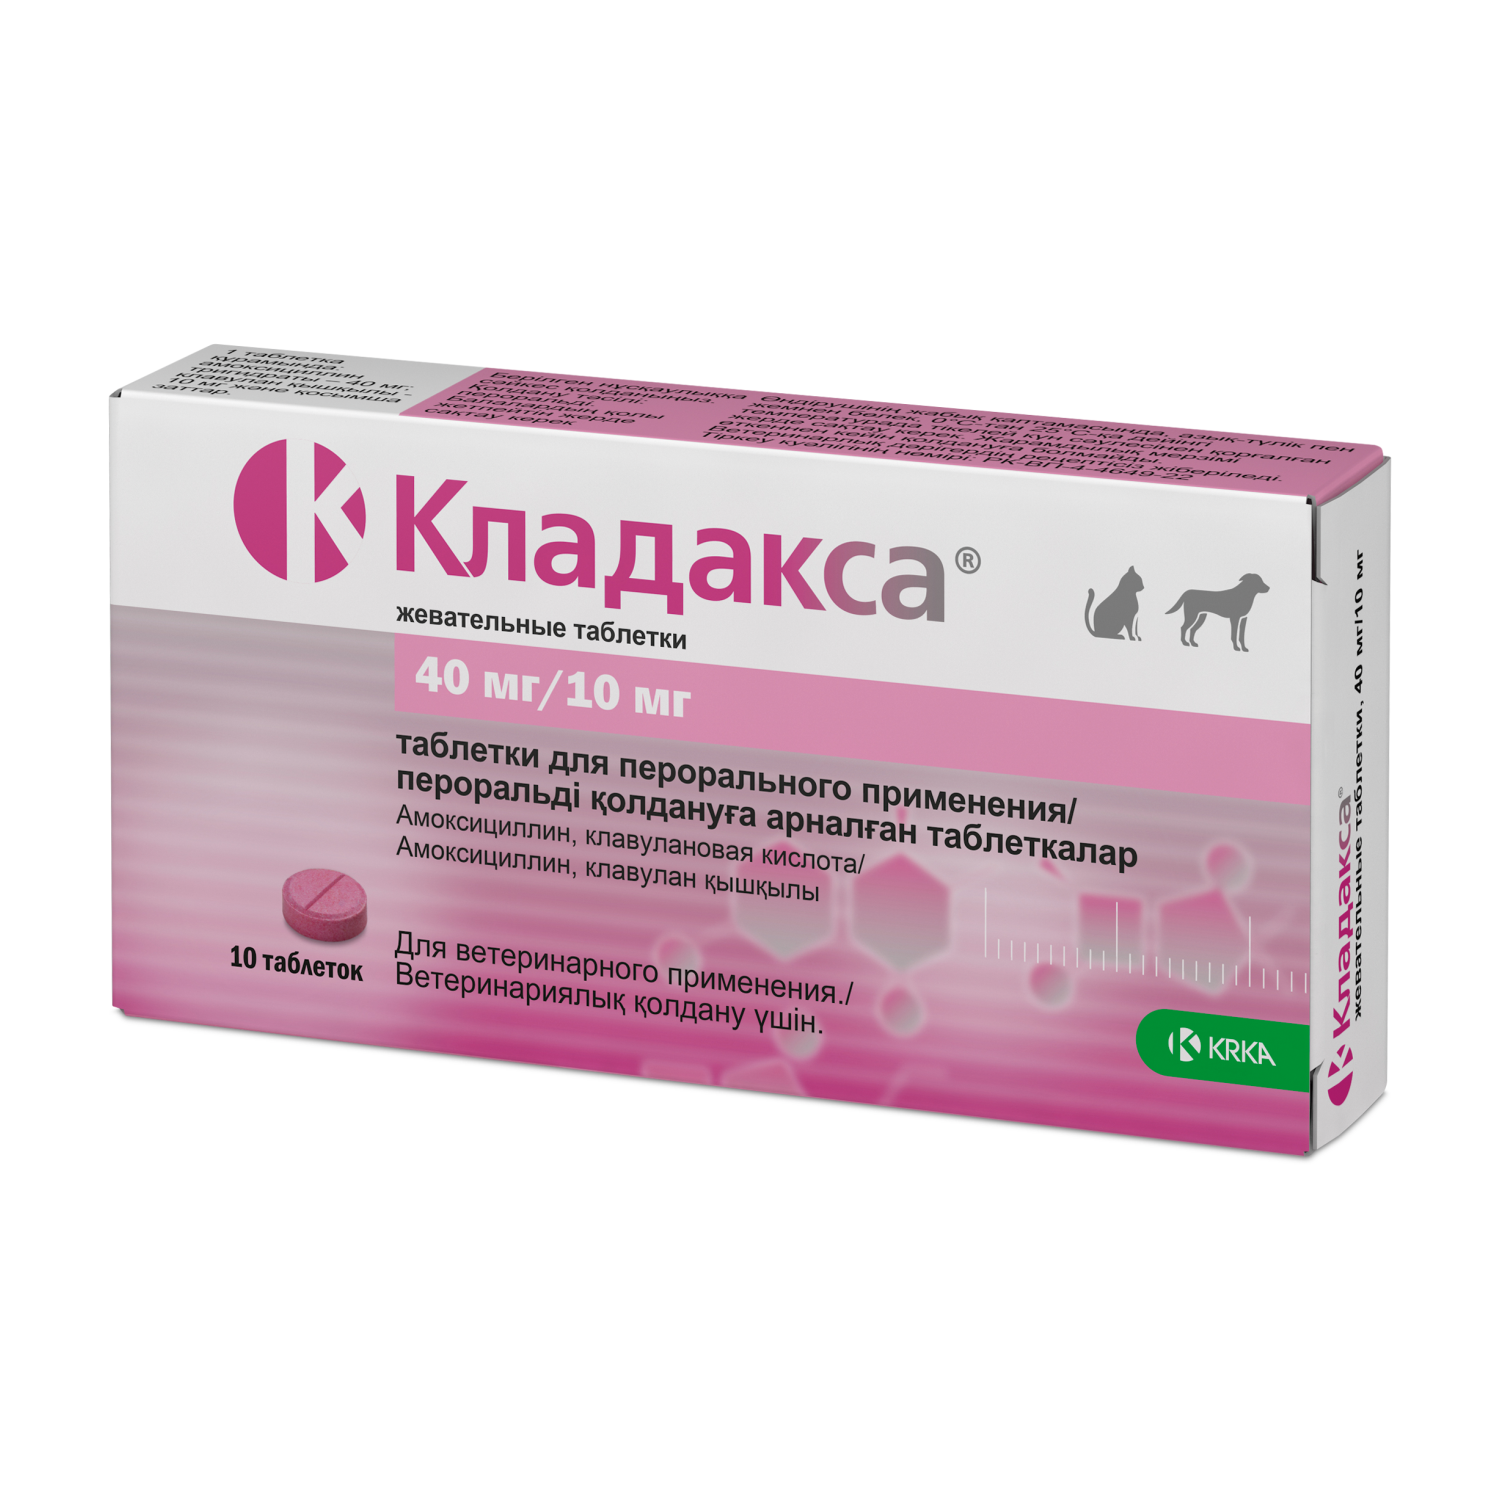 Препарат противовоспалительный для собак KRKA Кладакса 40мг/10мг 10таблеток - фото 1